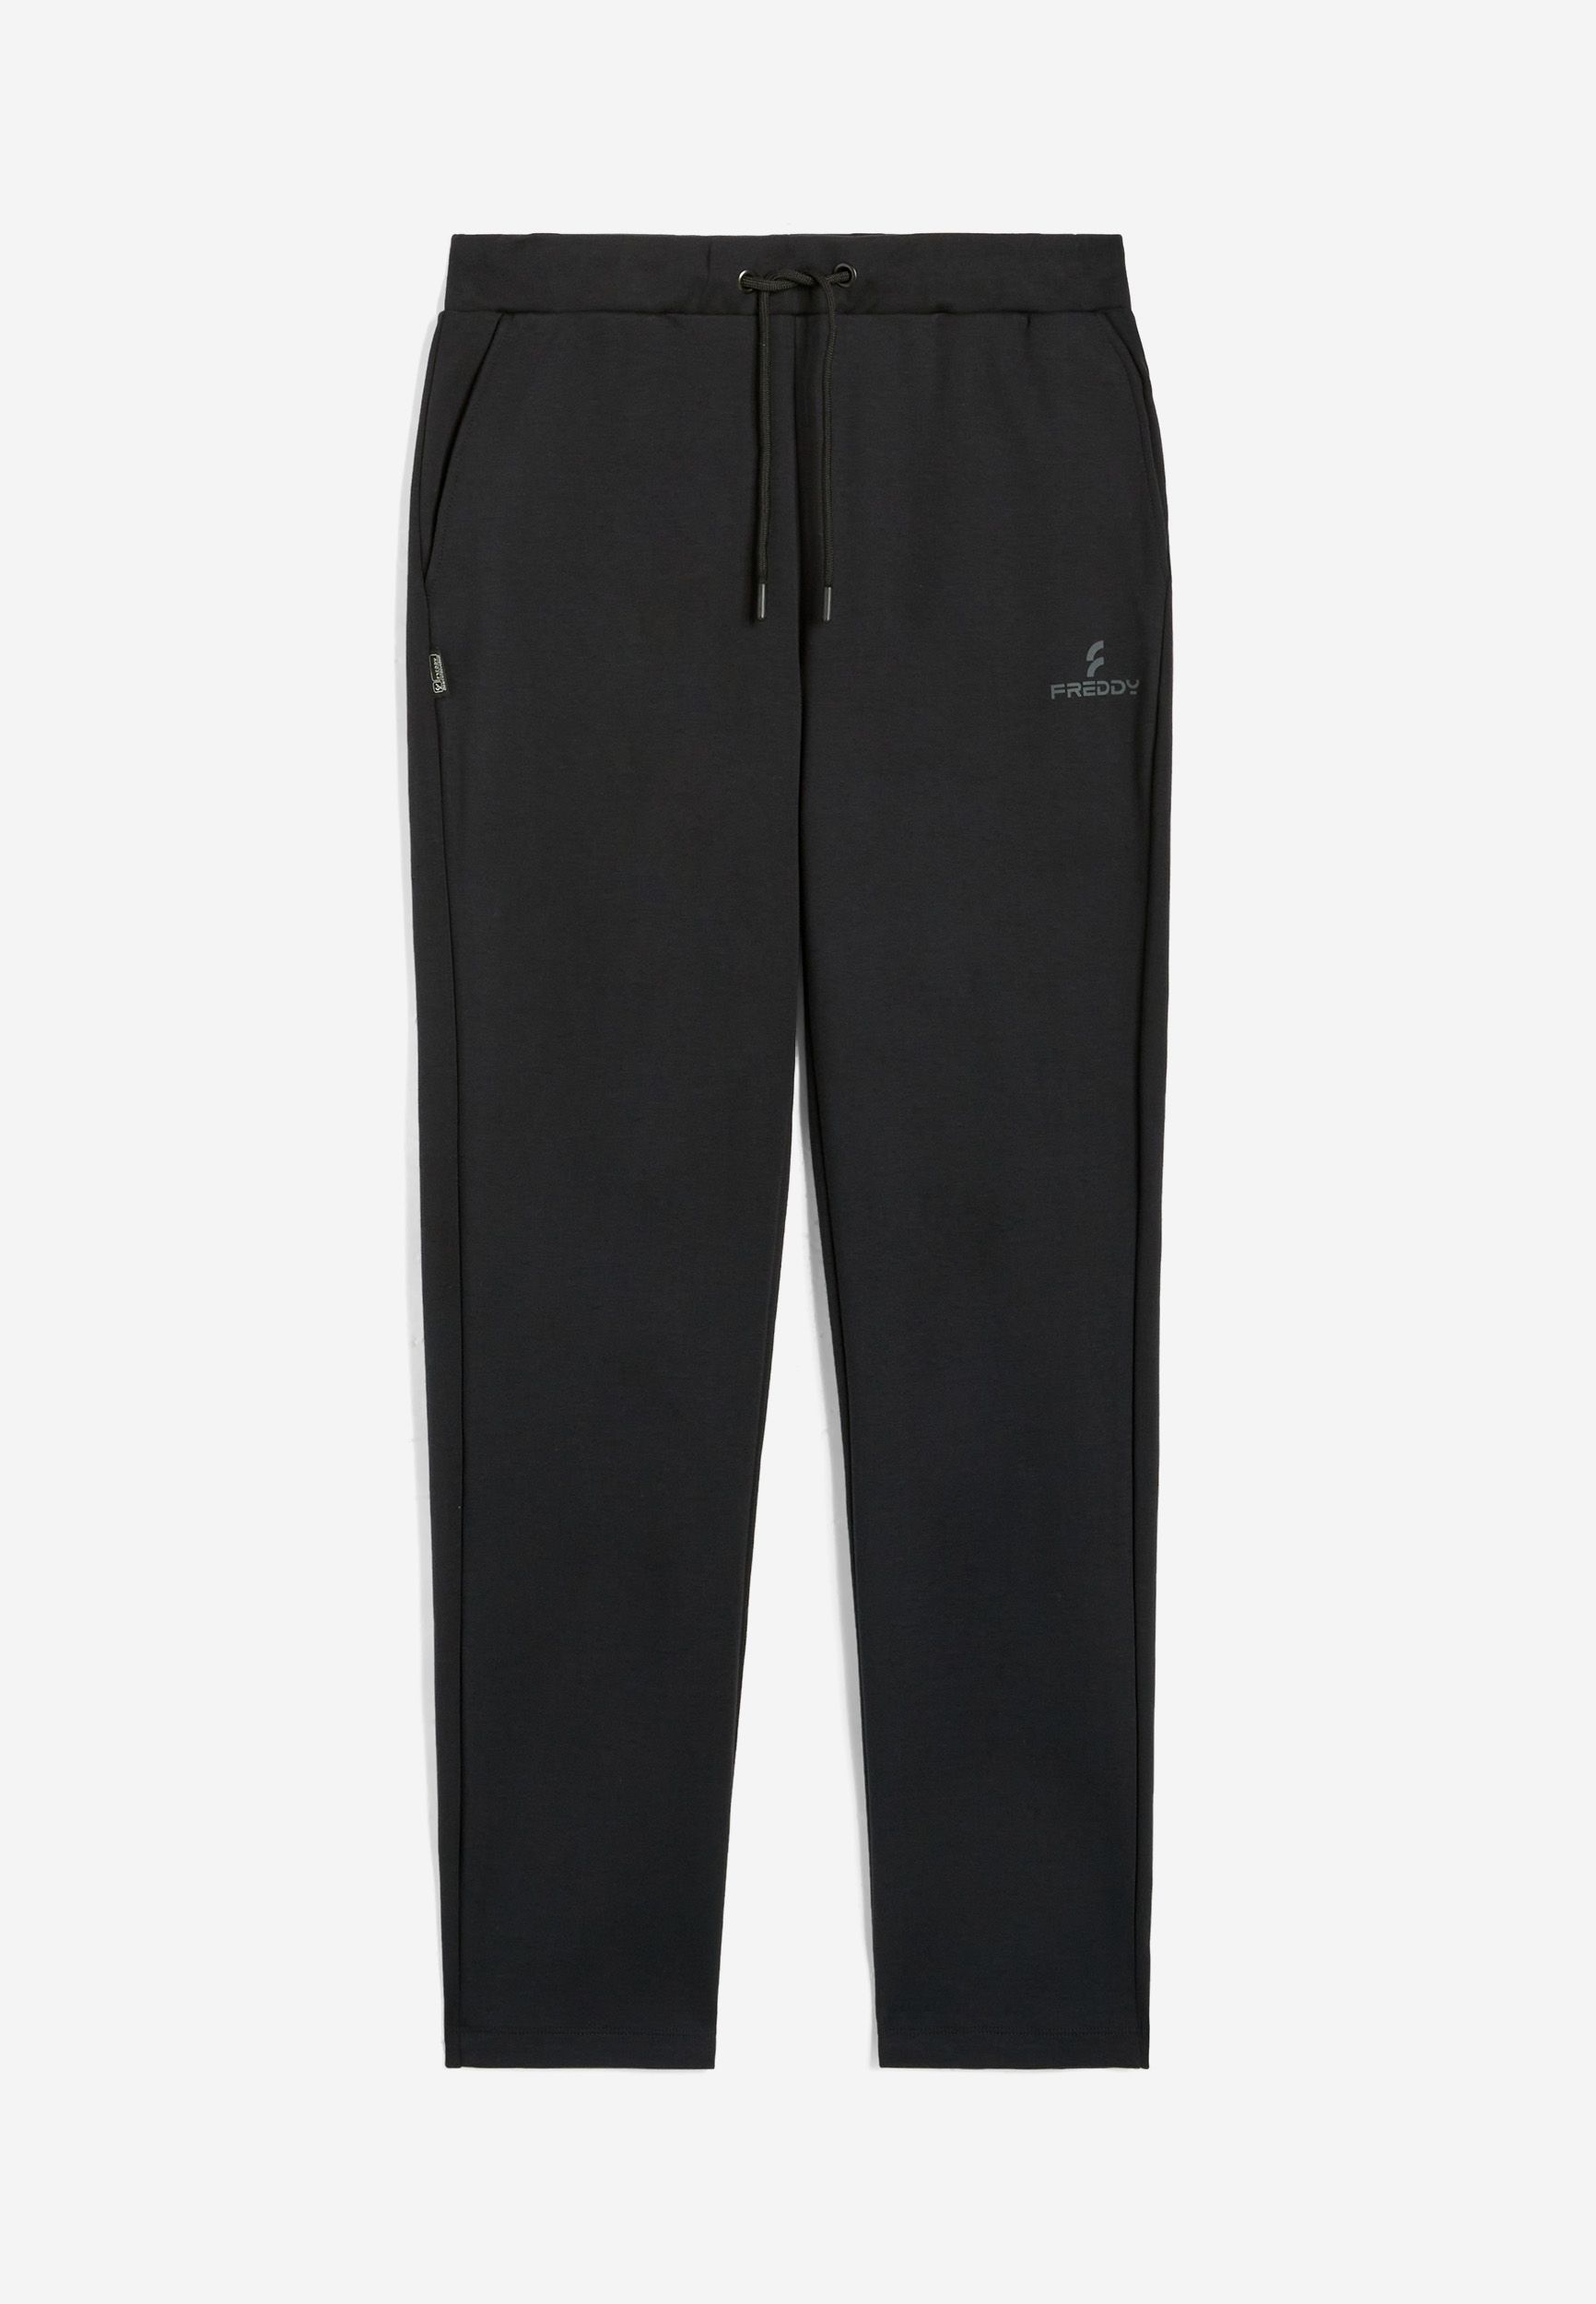 Pantalon de jogging pour homme, en coton interlock, avec coupe